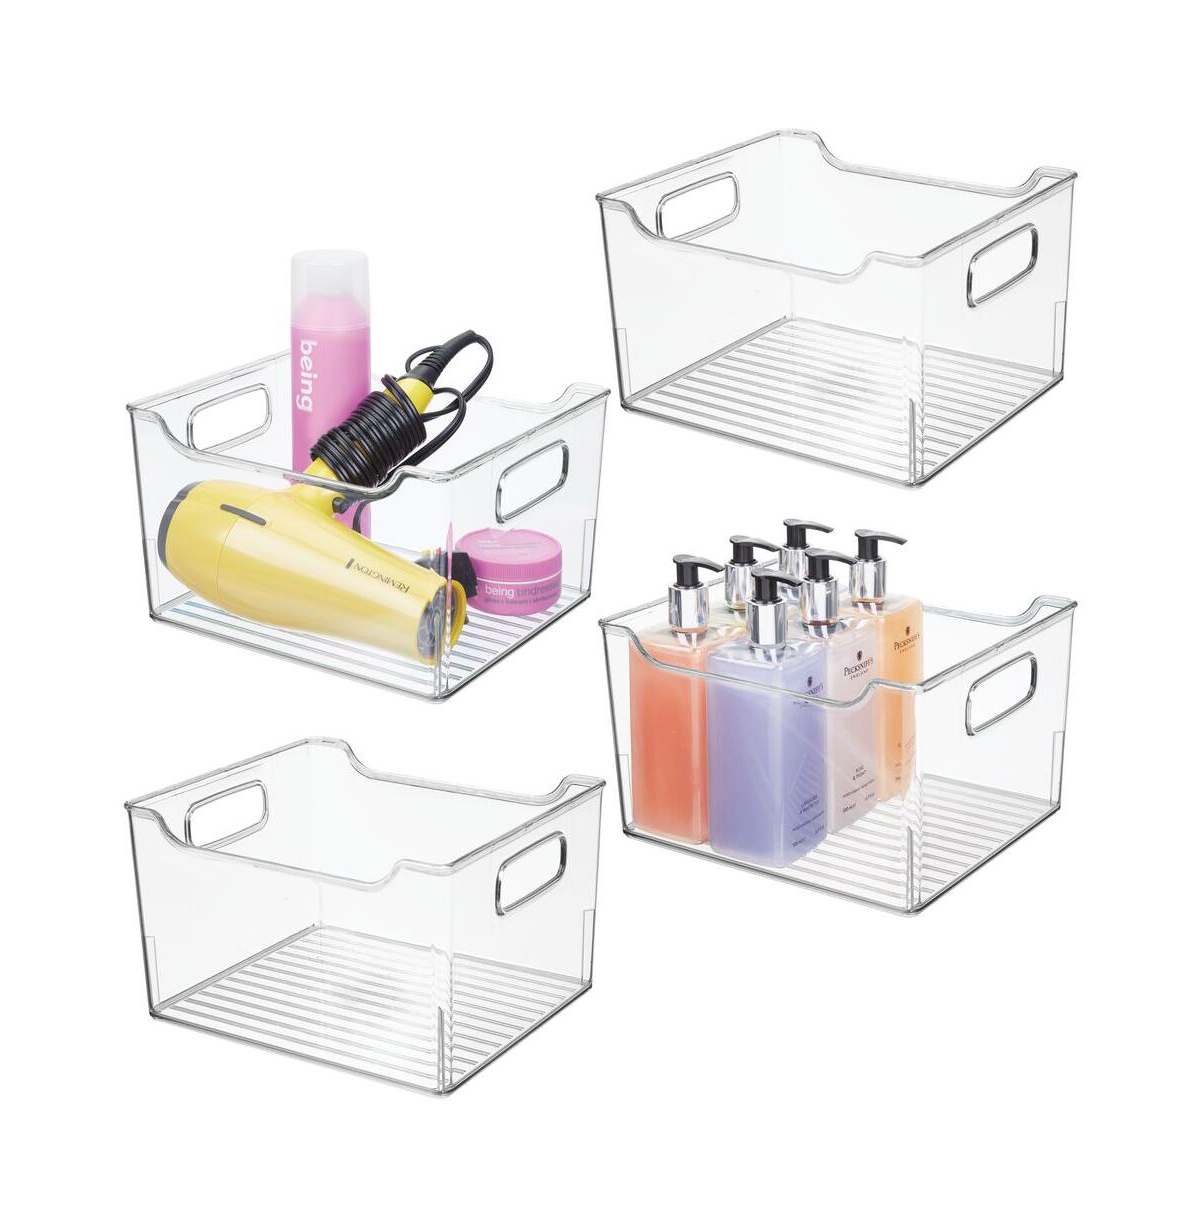 Plastic Bathroom Vanity Storage Organizer Bin, Handles, 4 Pack - Clear